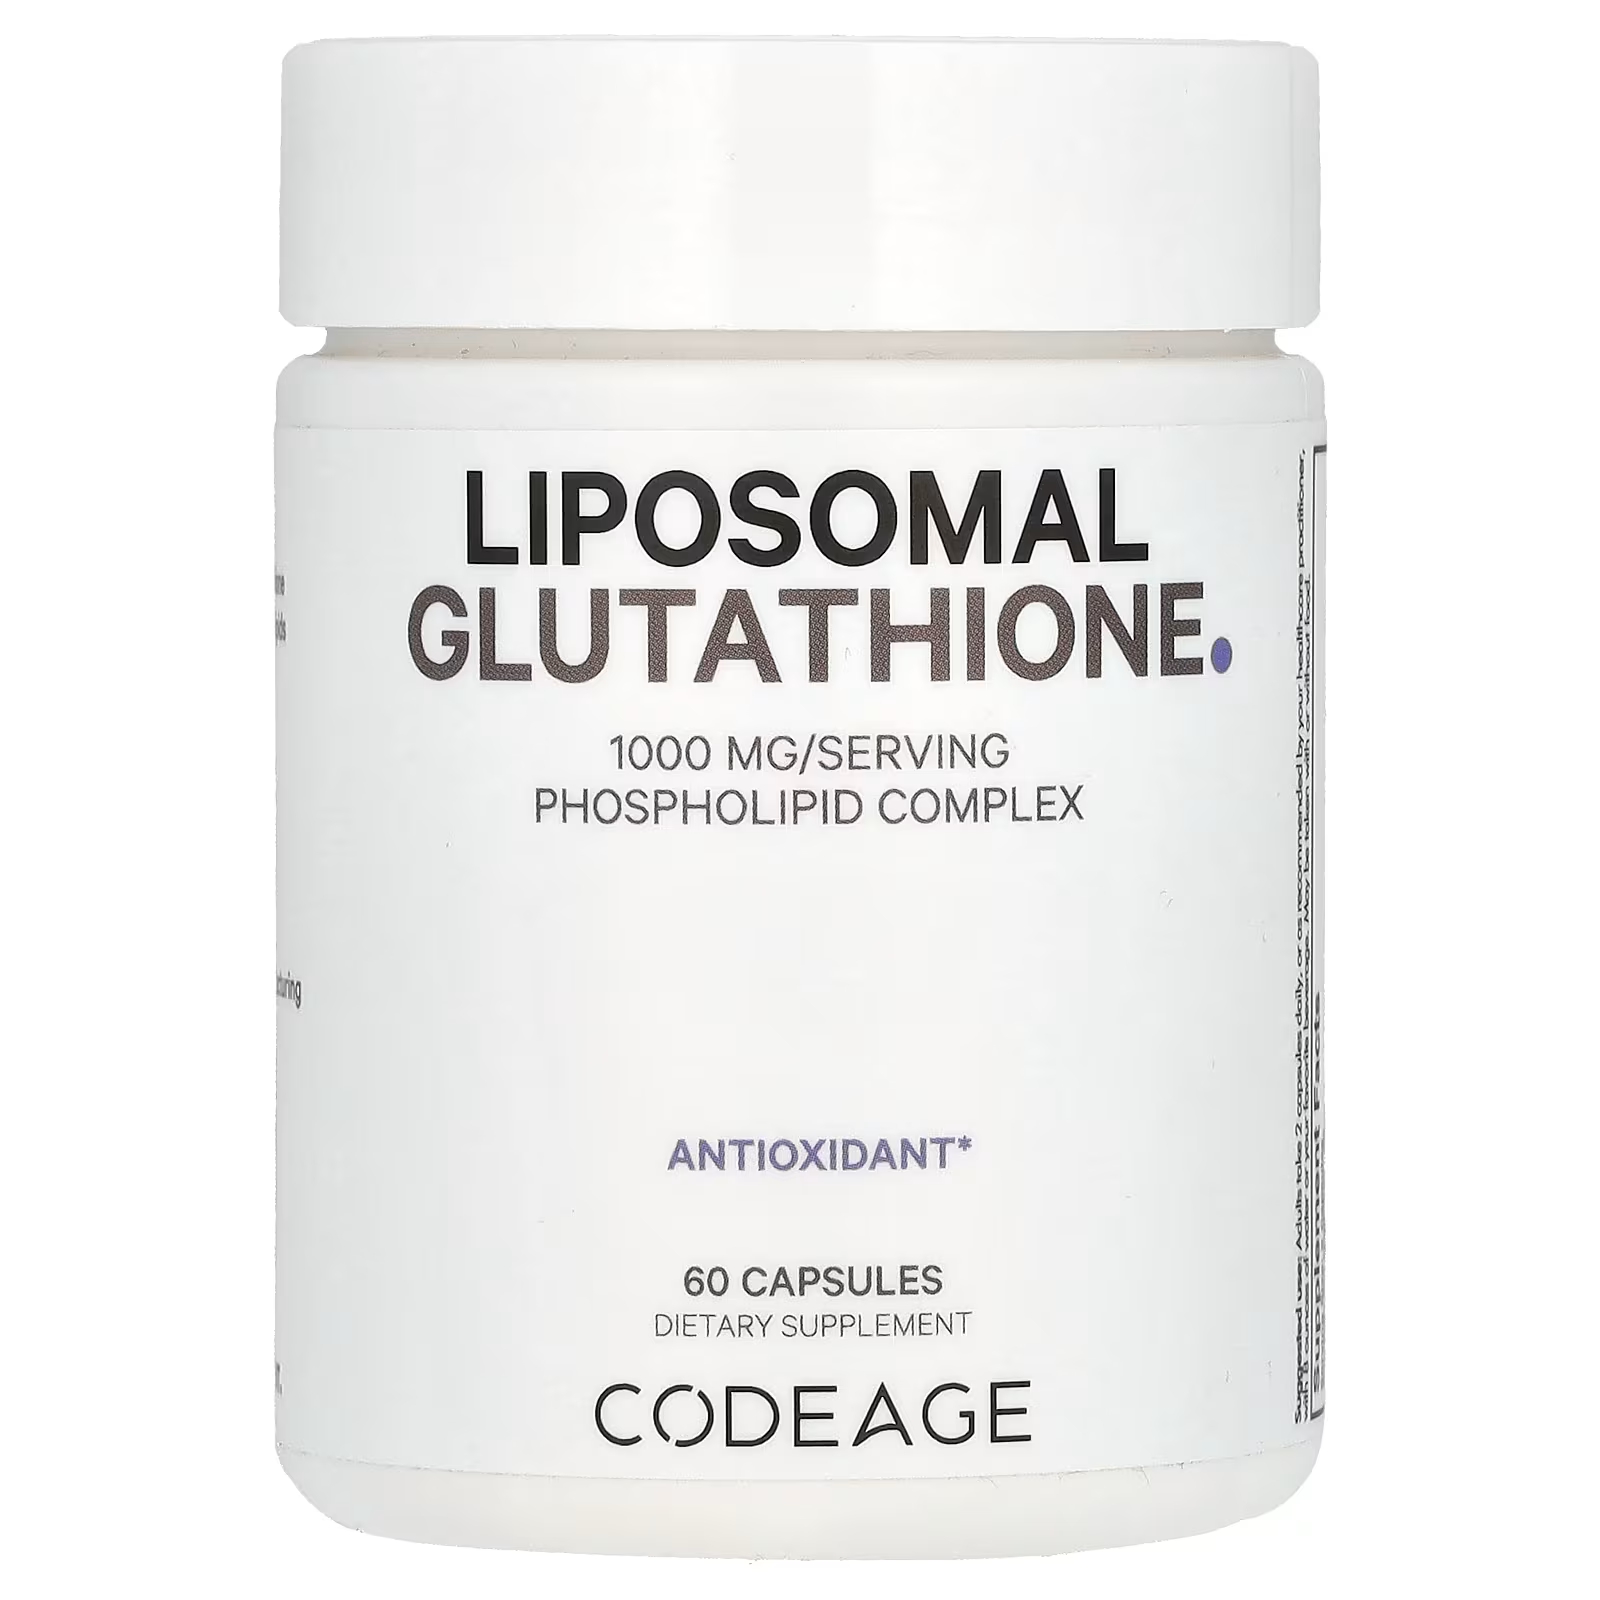 Codeage Липосомальный глутатион 1000 мг 60 капсул (500 мг на капсулу) codeage липосомальный глутатион 1000 мг 60 капсул 500 мг на капсулу